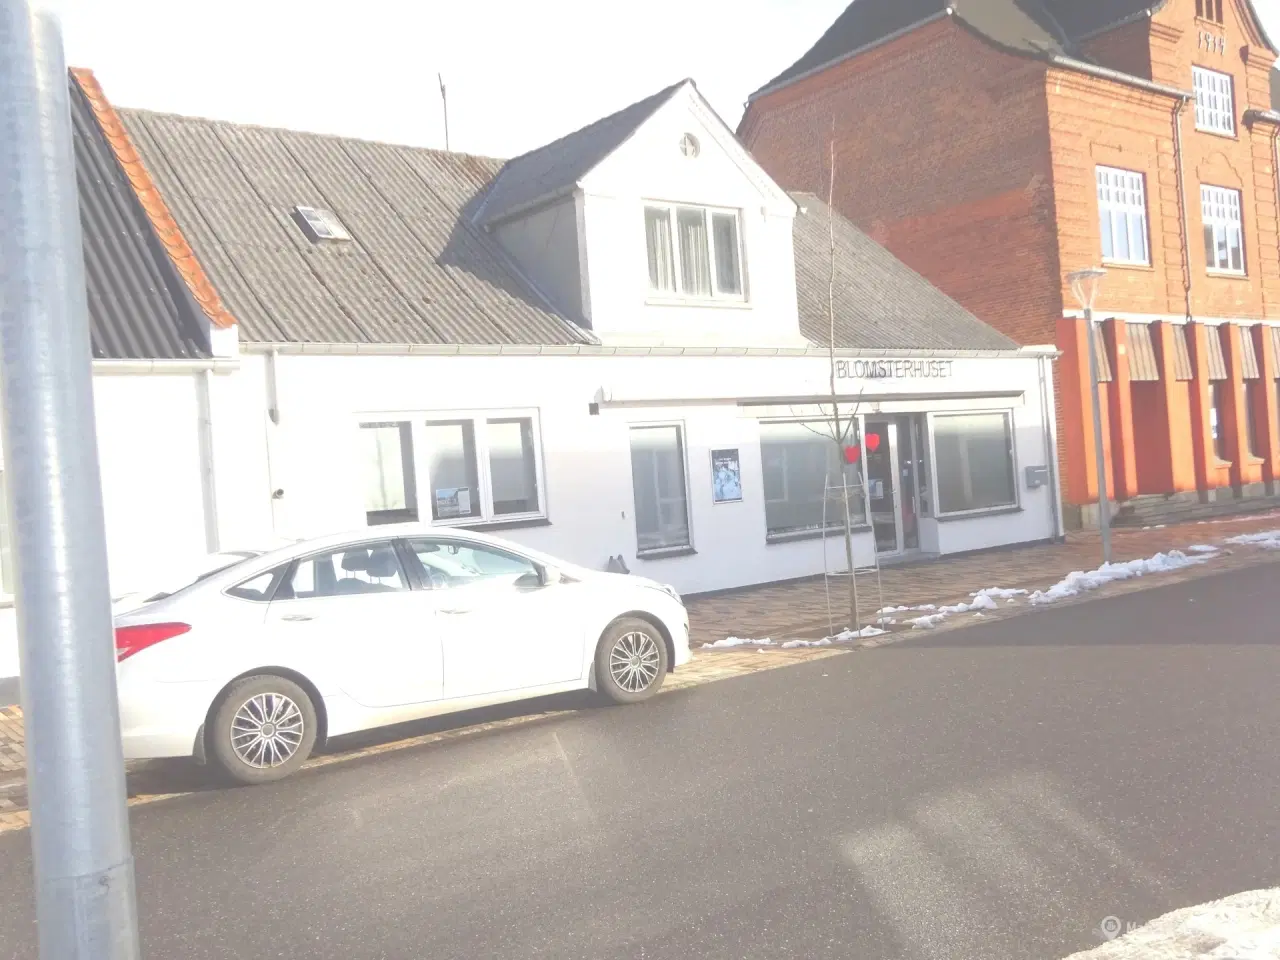 Billede 1 - Erhverslokaler i Aalestrup bymidte